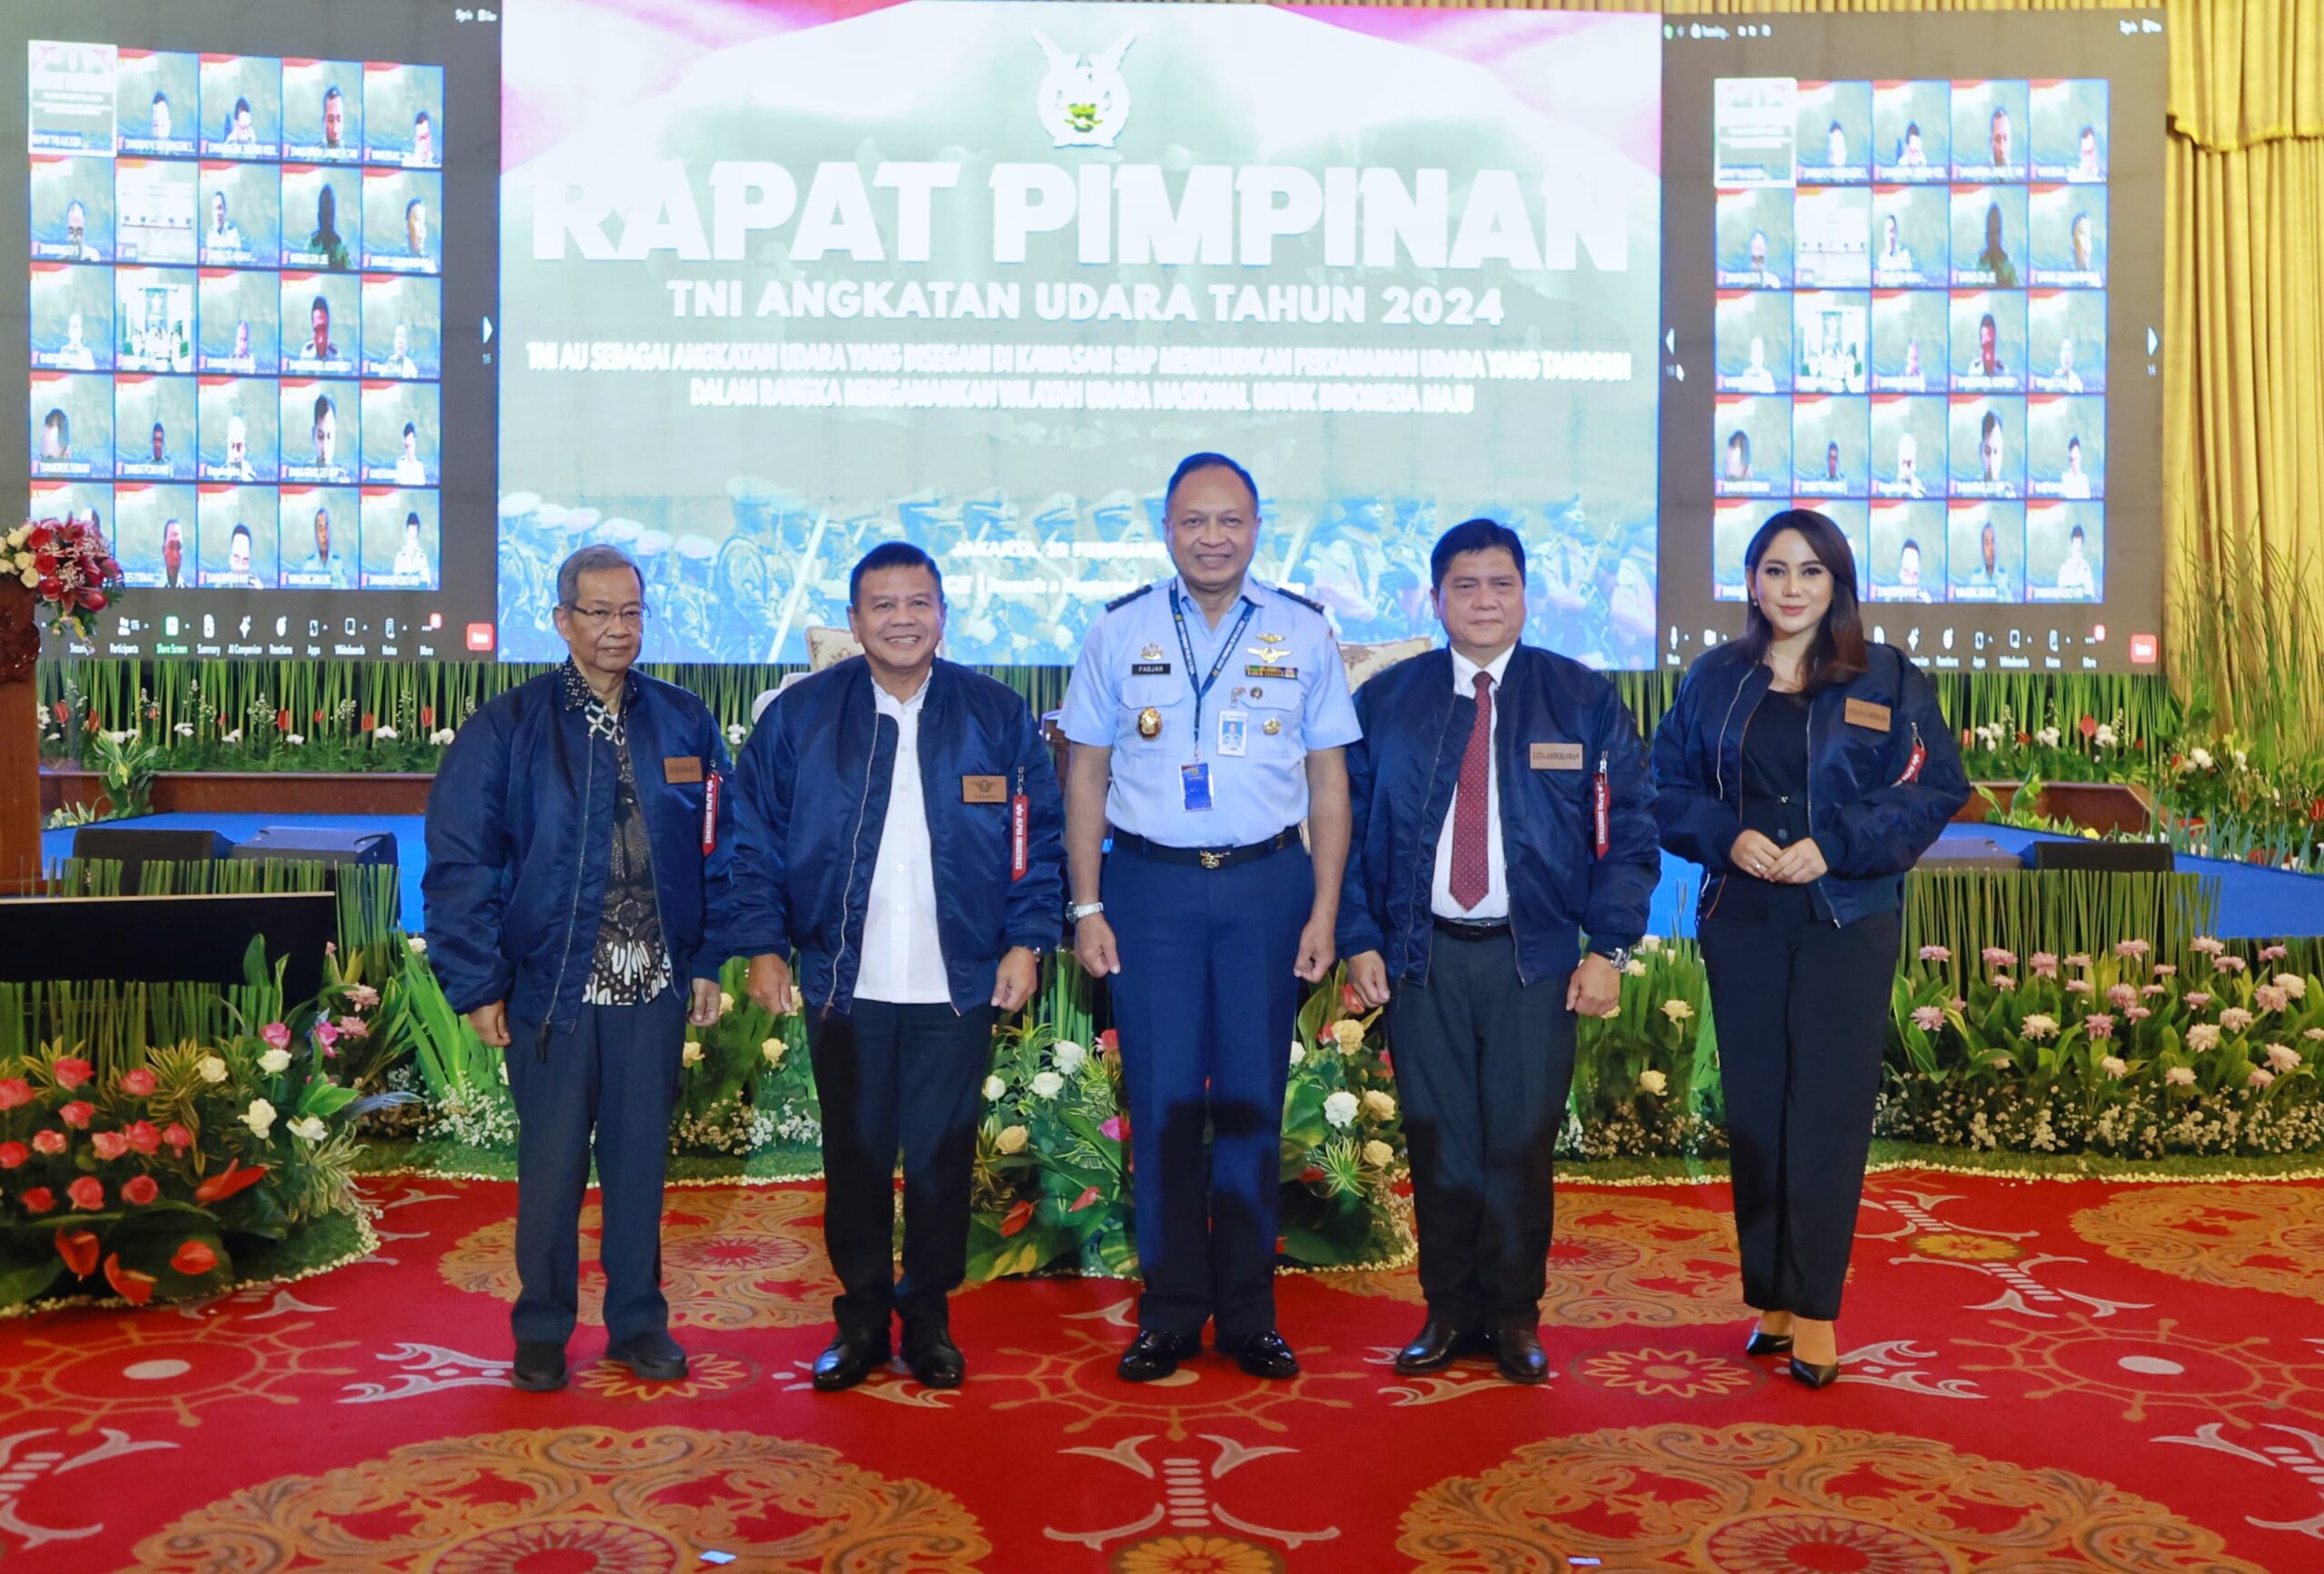 Rapat Pimpinan TNI AU Samakan Persepsi dan Cara Pandang: Kasau Membuka Rapat Pimpinan TNI AU 2024